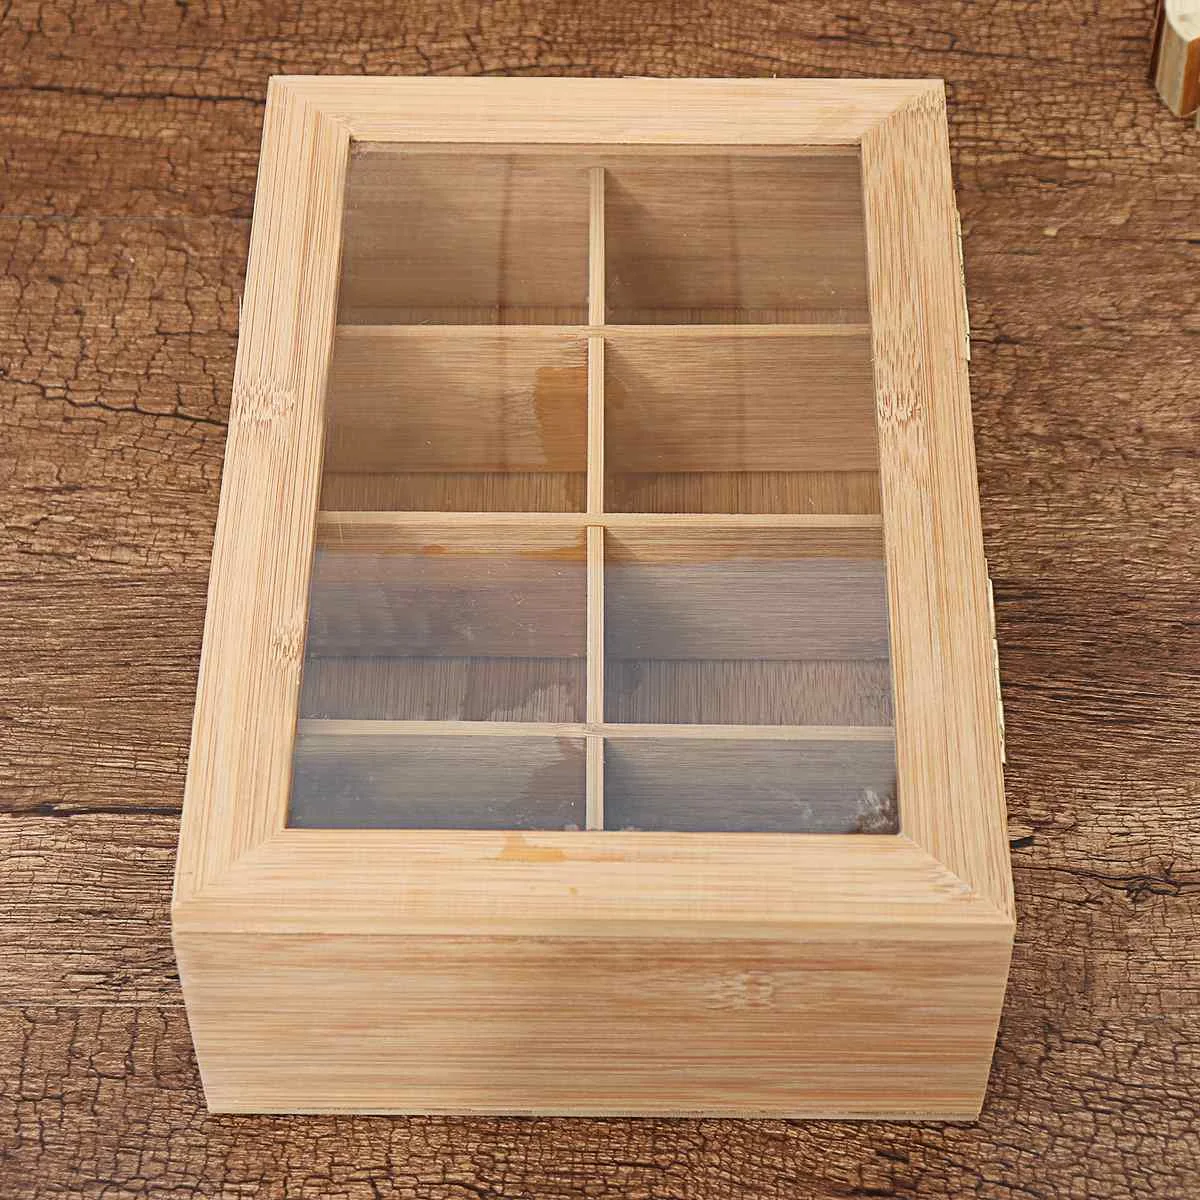 8 деревянные ячейки коробка для чая стеклянная верхняя крышка контейнер чайные пакетики Коробка Для Хранения Чехол кухонный органайзер для кладовки подарки 30X20X9,2 см